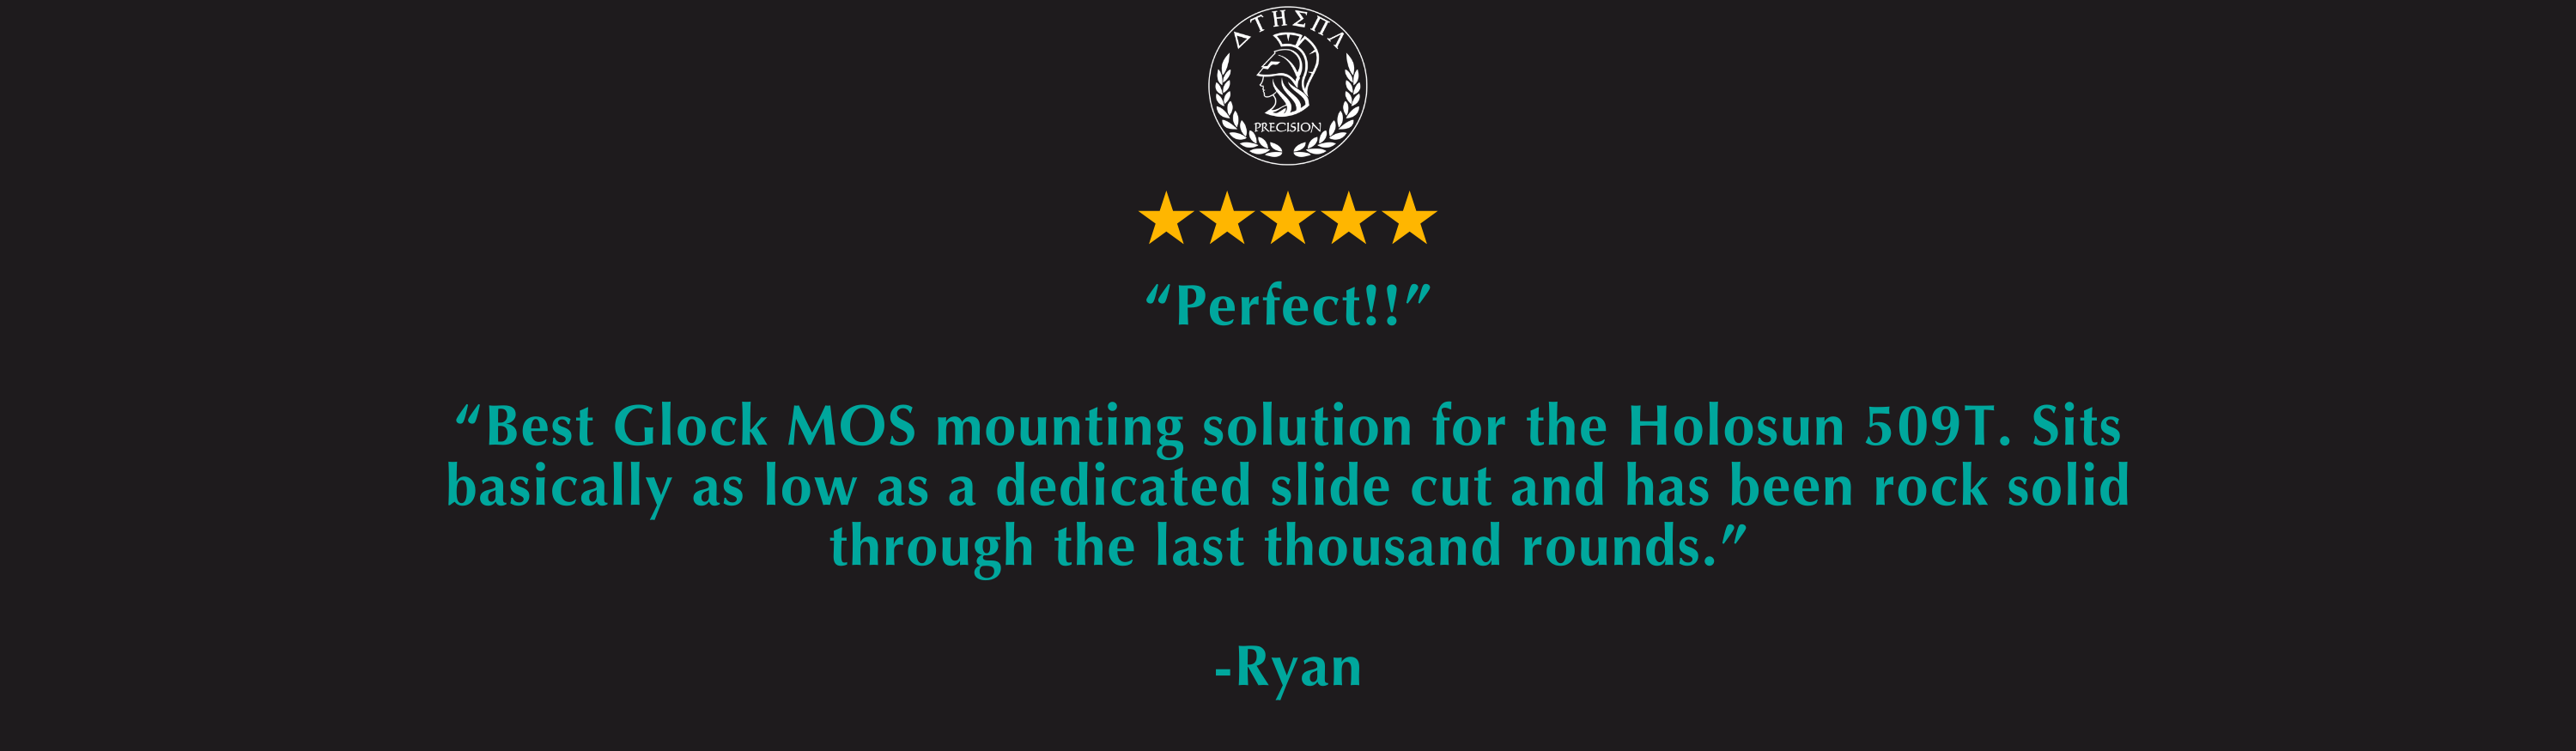 Ryan Review